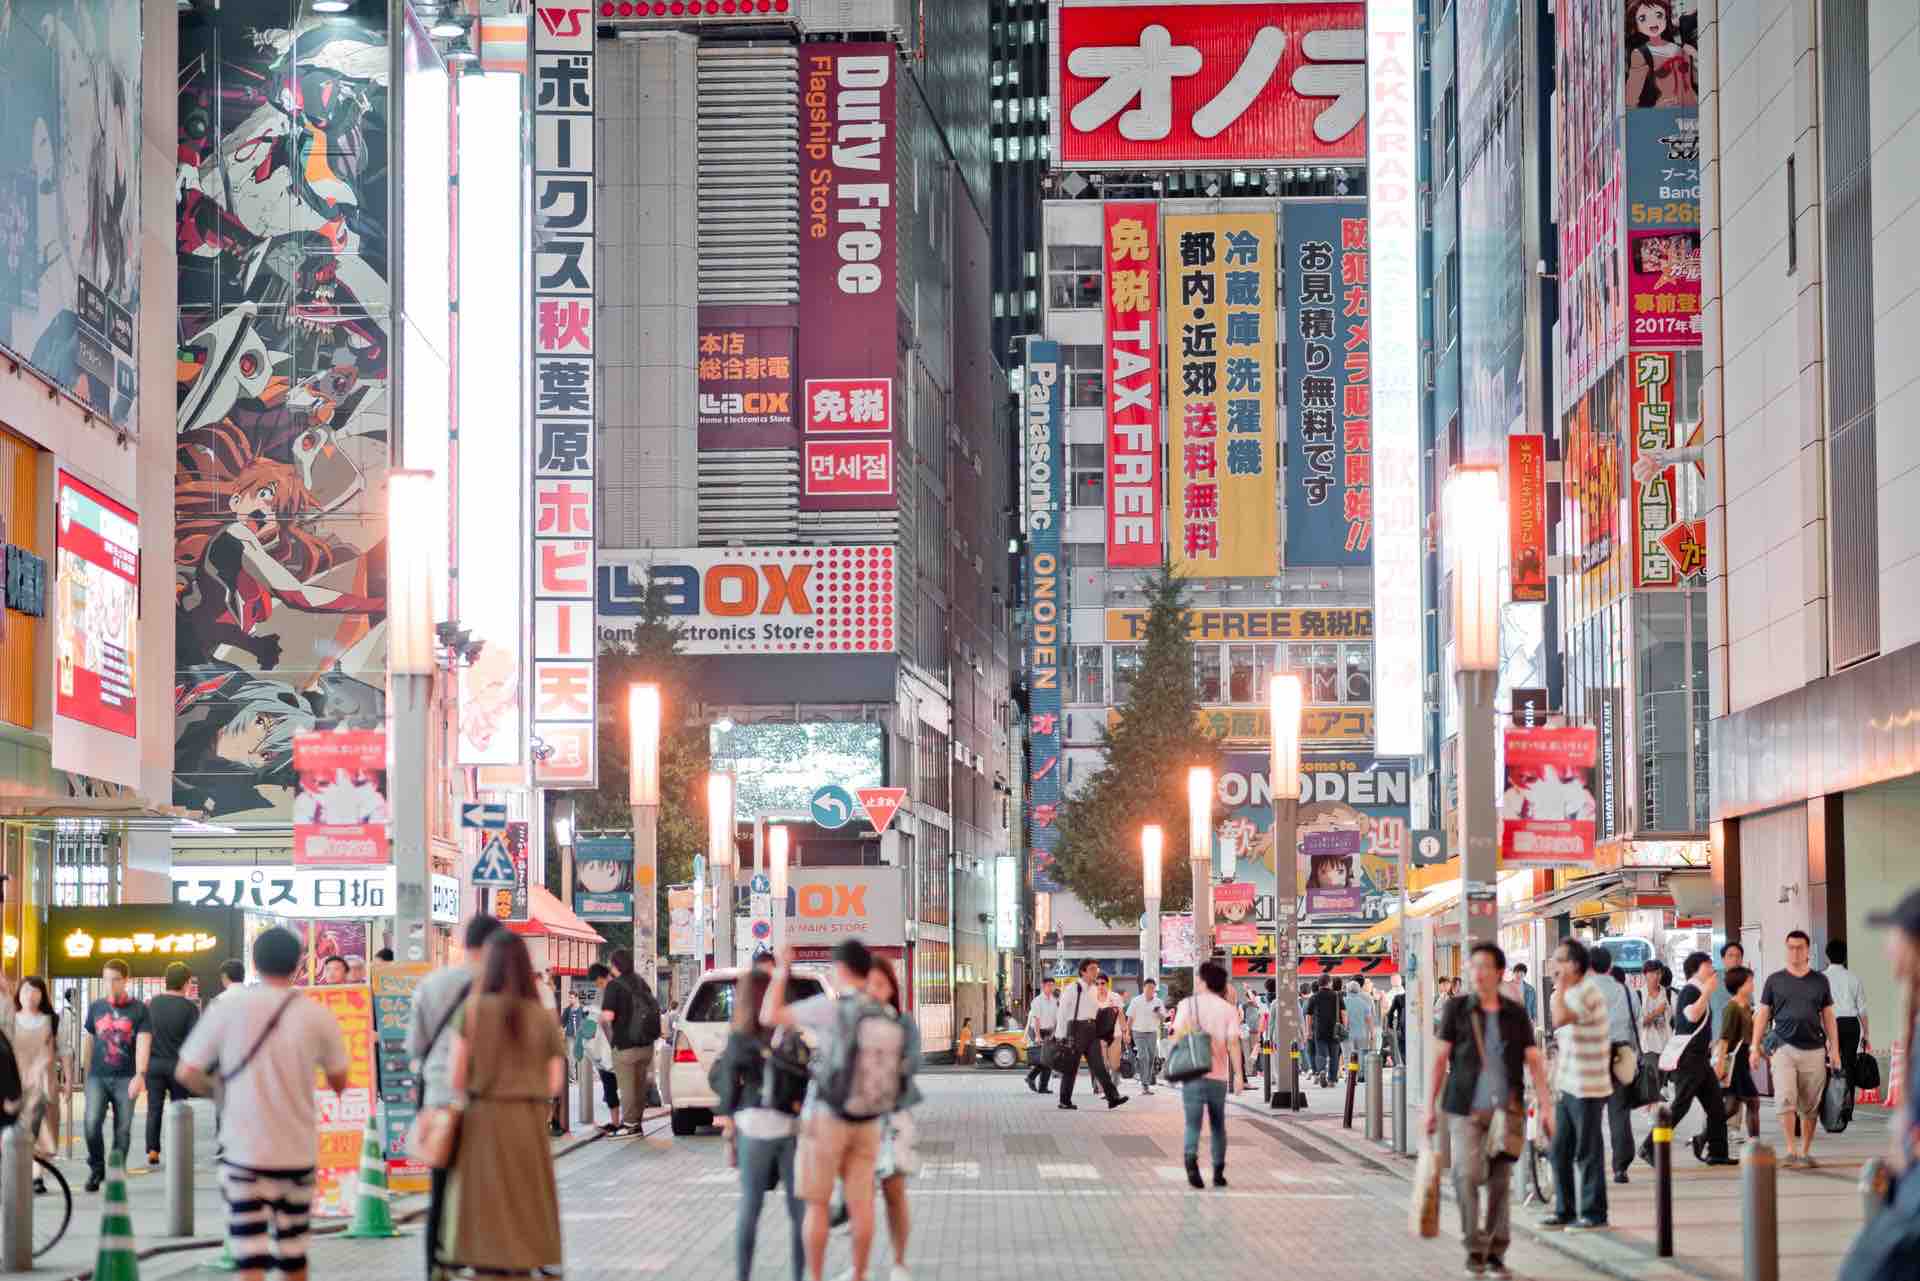 Vocaboli ed Espressioni Utili in Giapponese per Fare Shopping in Giappone